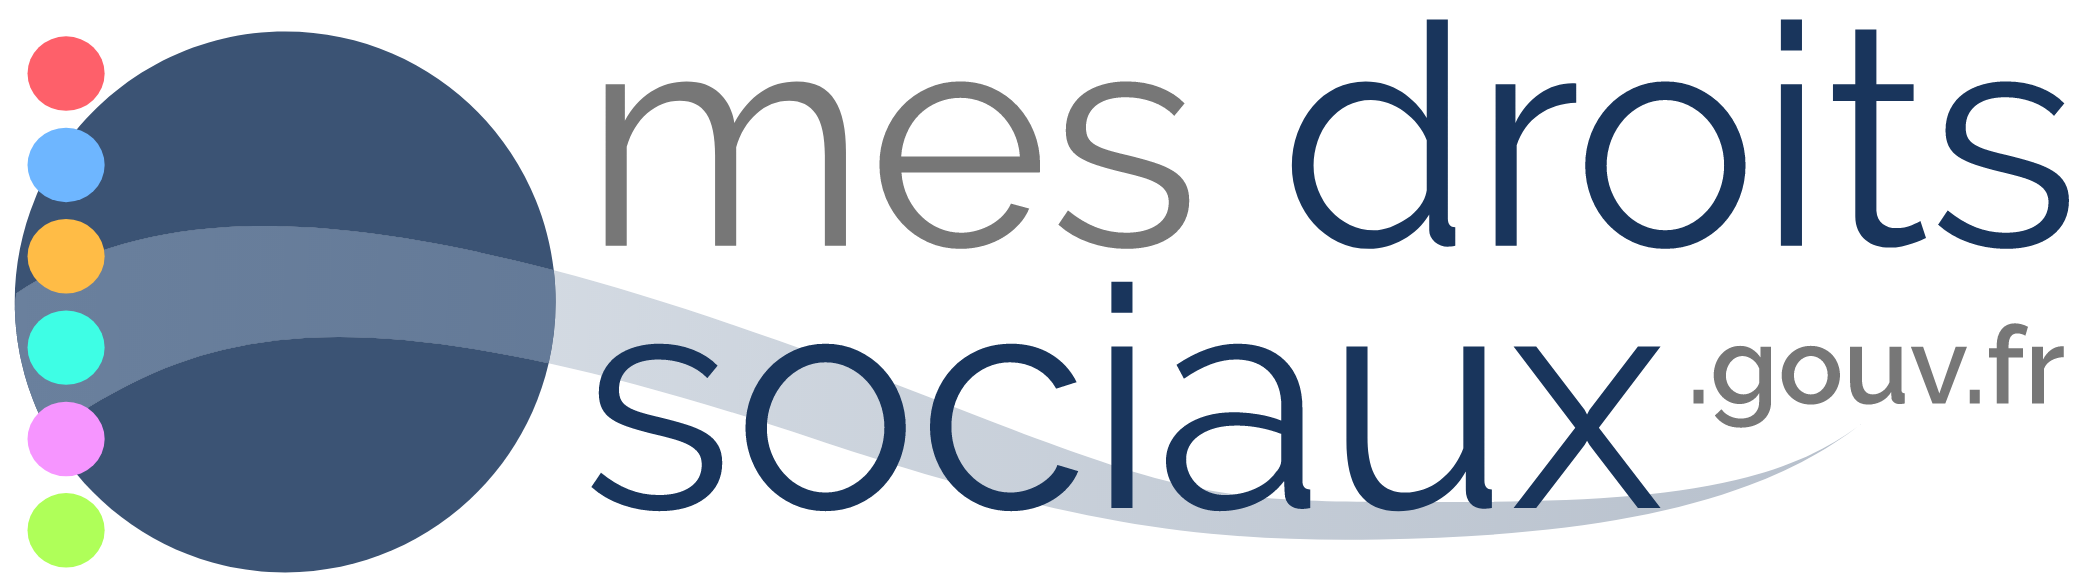 Logo mes droits sociaux